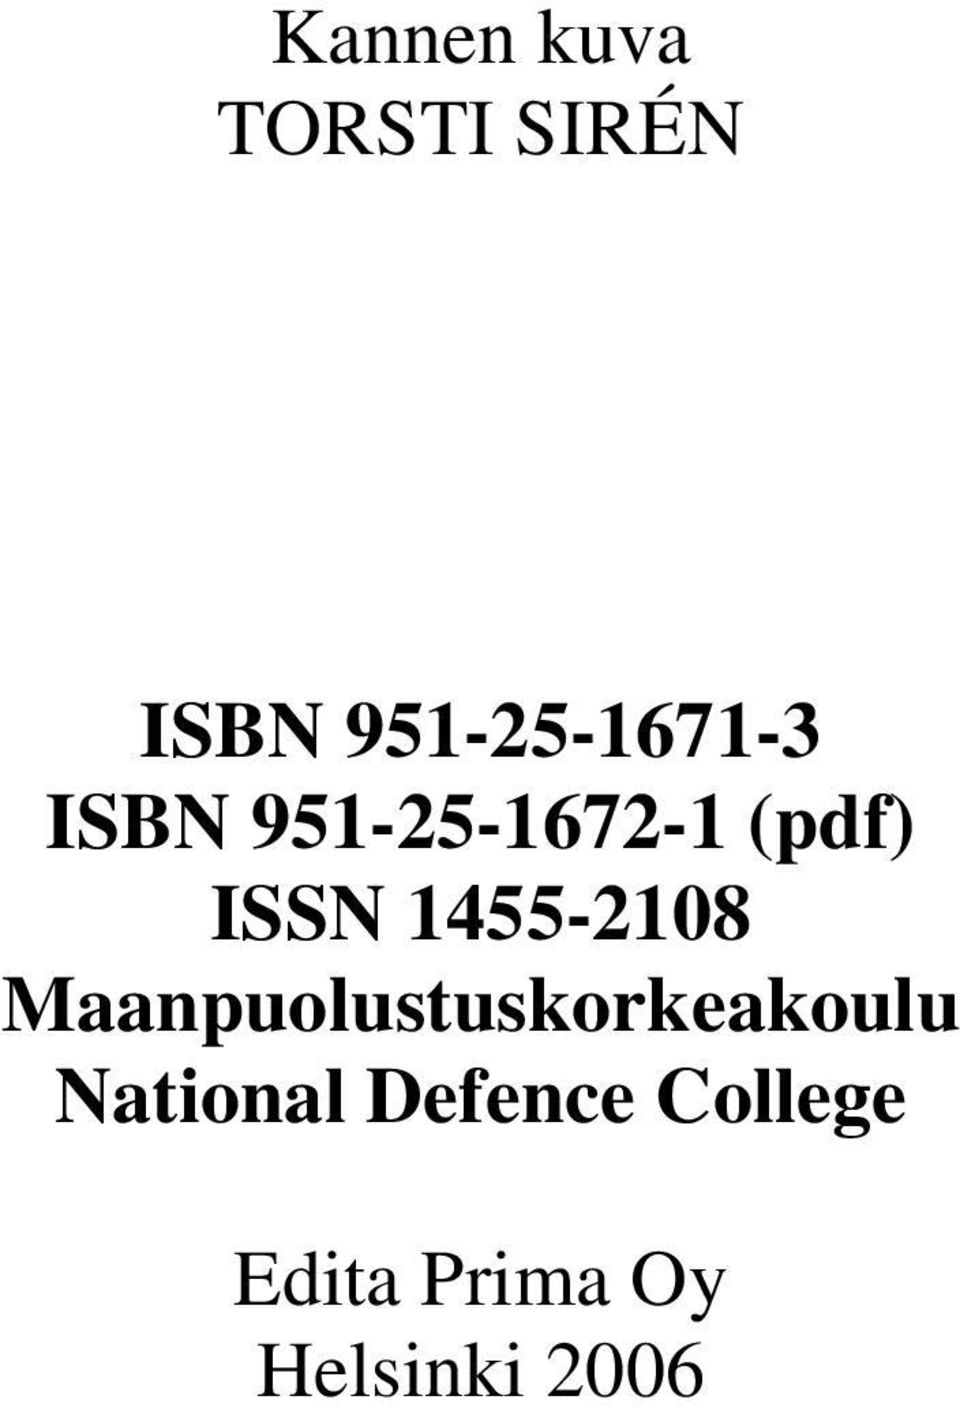 ISSN 1455-2108 Maanpuolustuskorkeakoulu